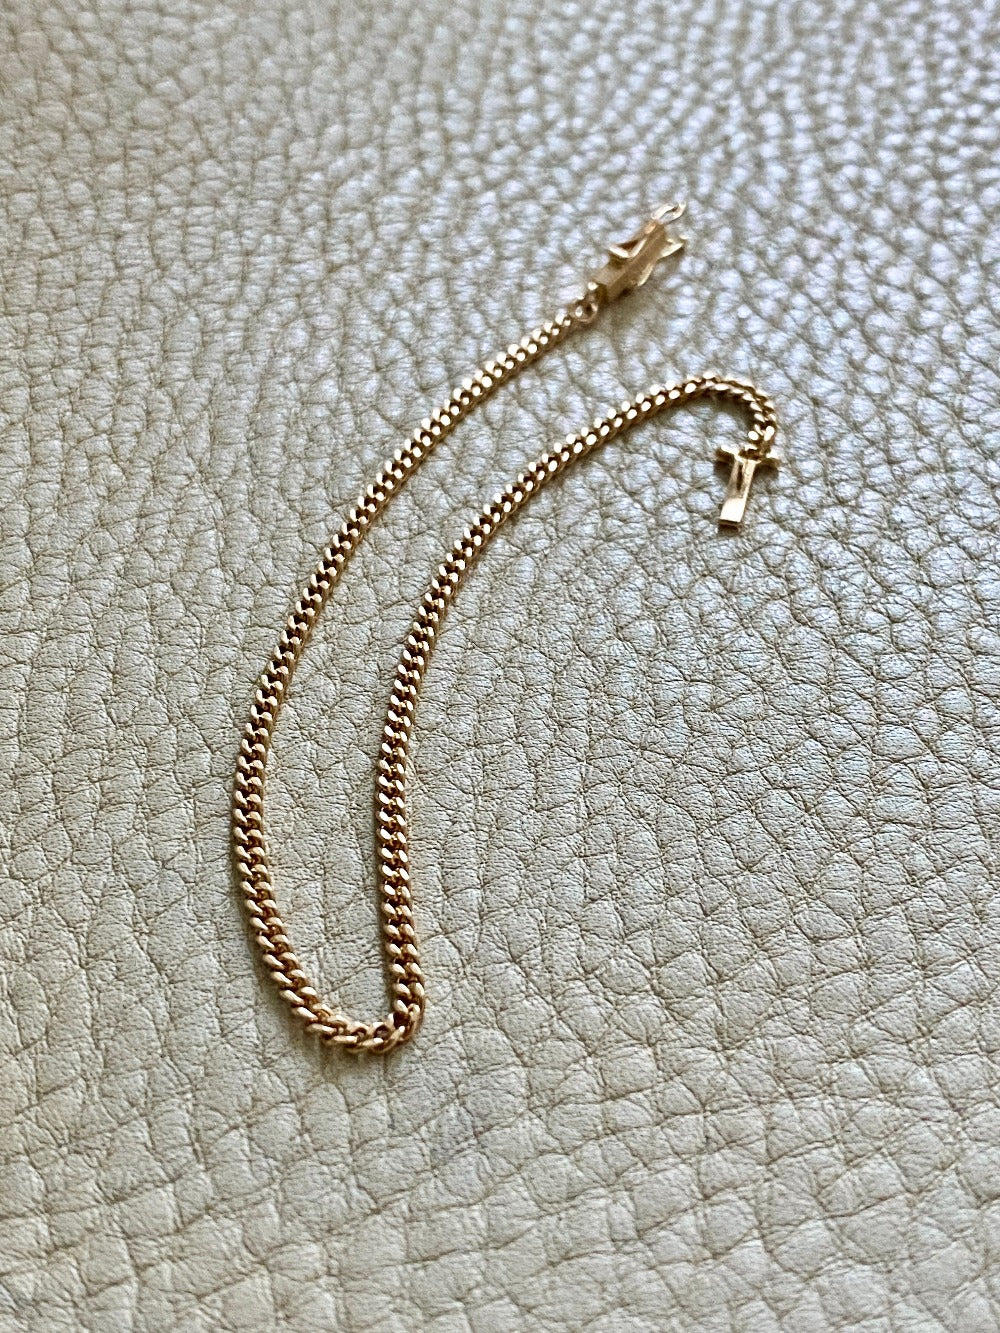 Vintage 18k gold curb bracelet - 7.2 inch length